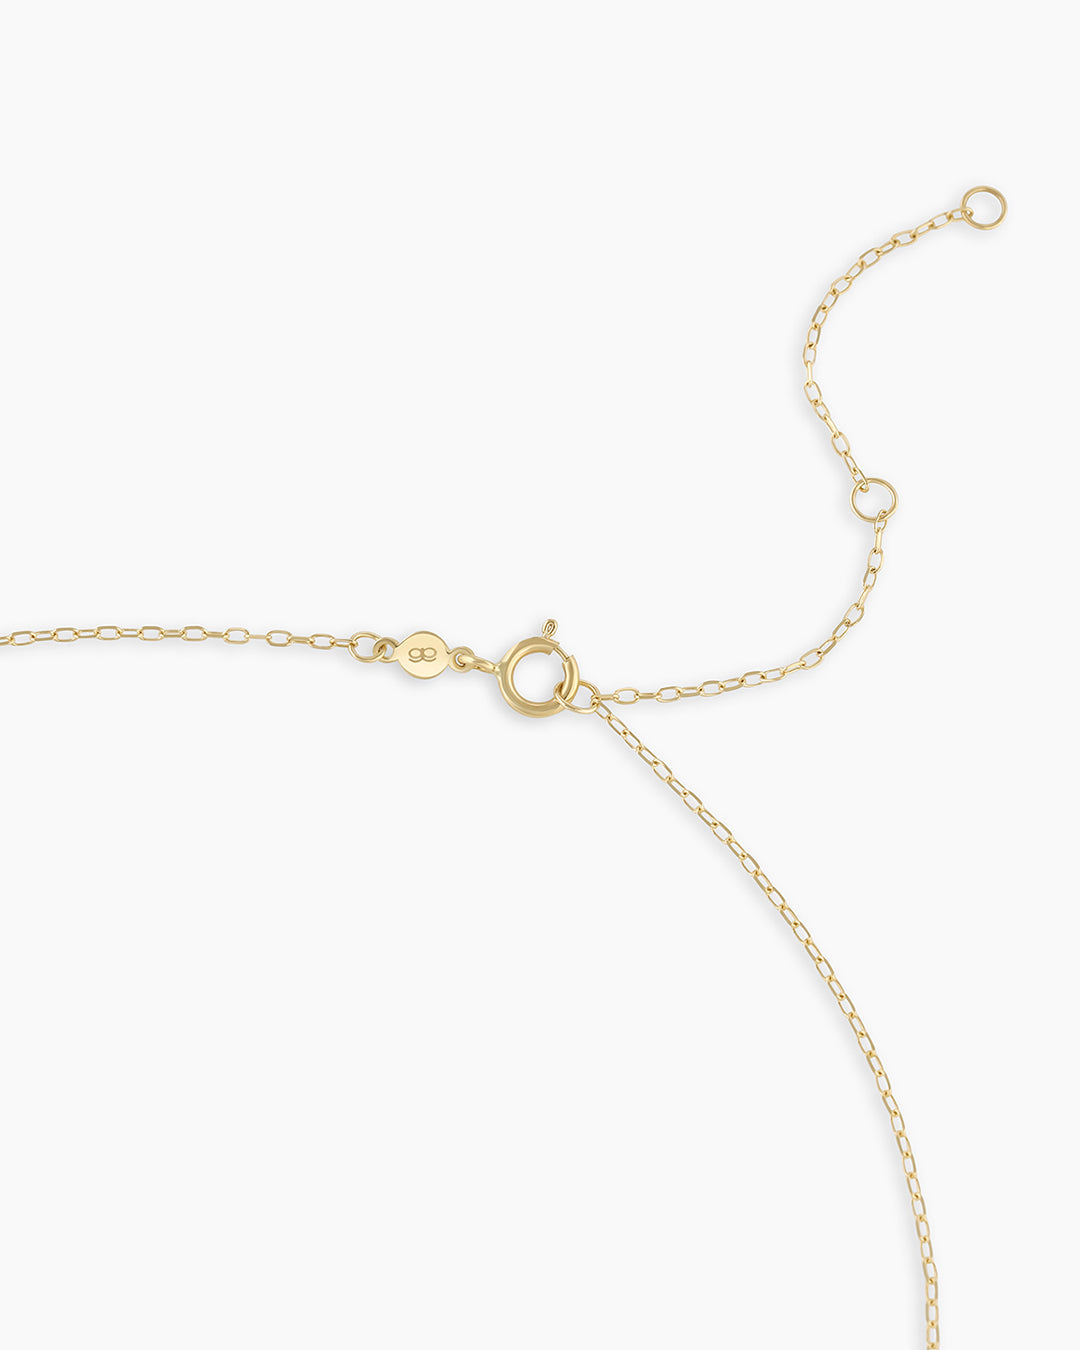 Heart Padlock Necklace in 14K Solid Gold, Women's by Gorjana